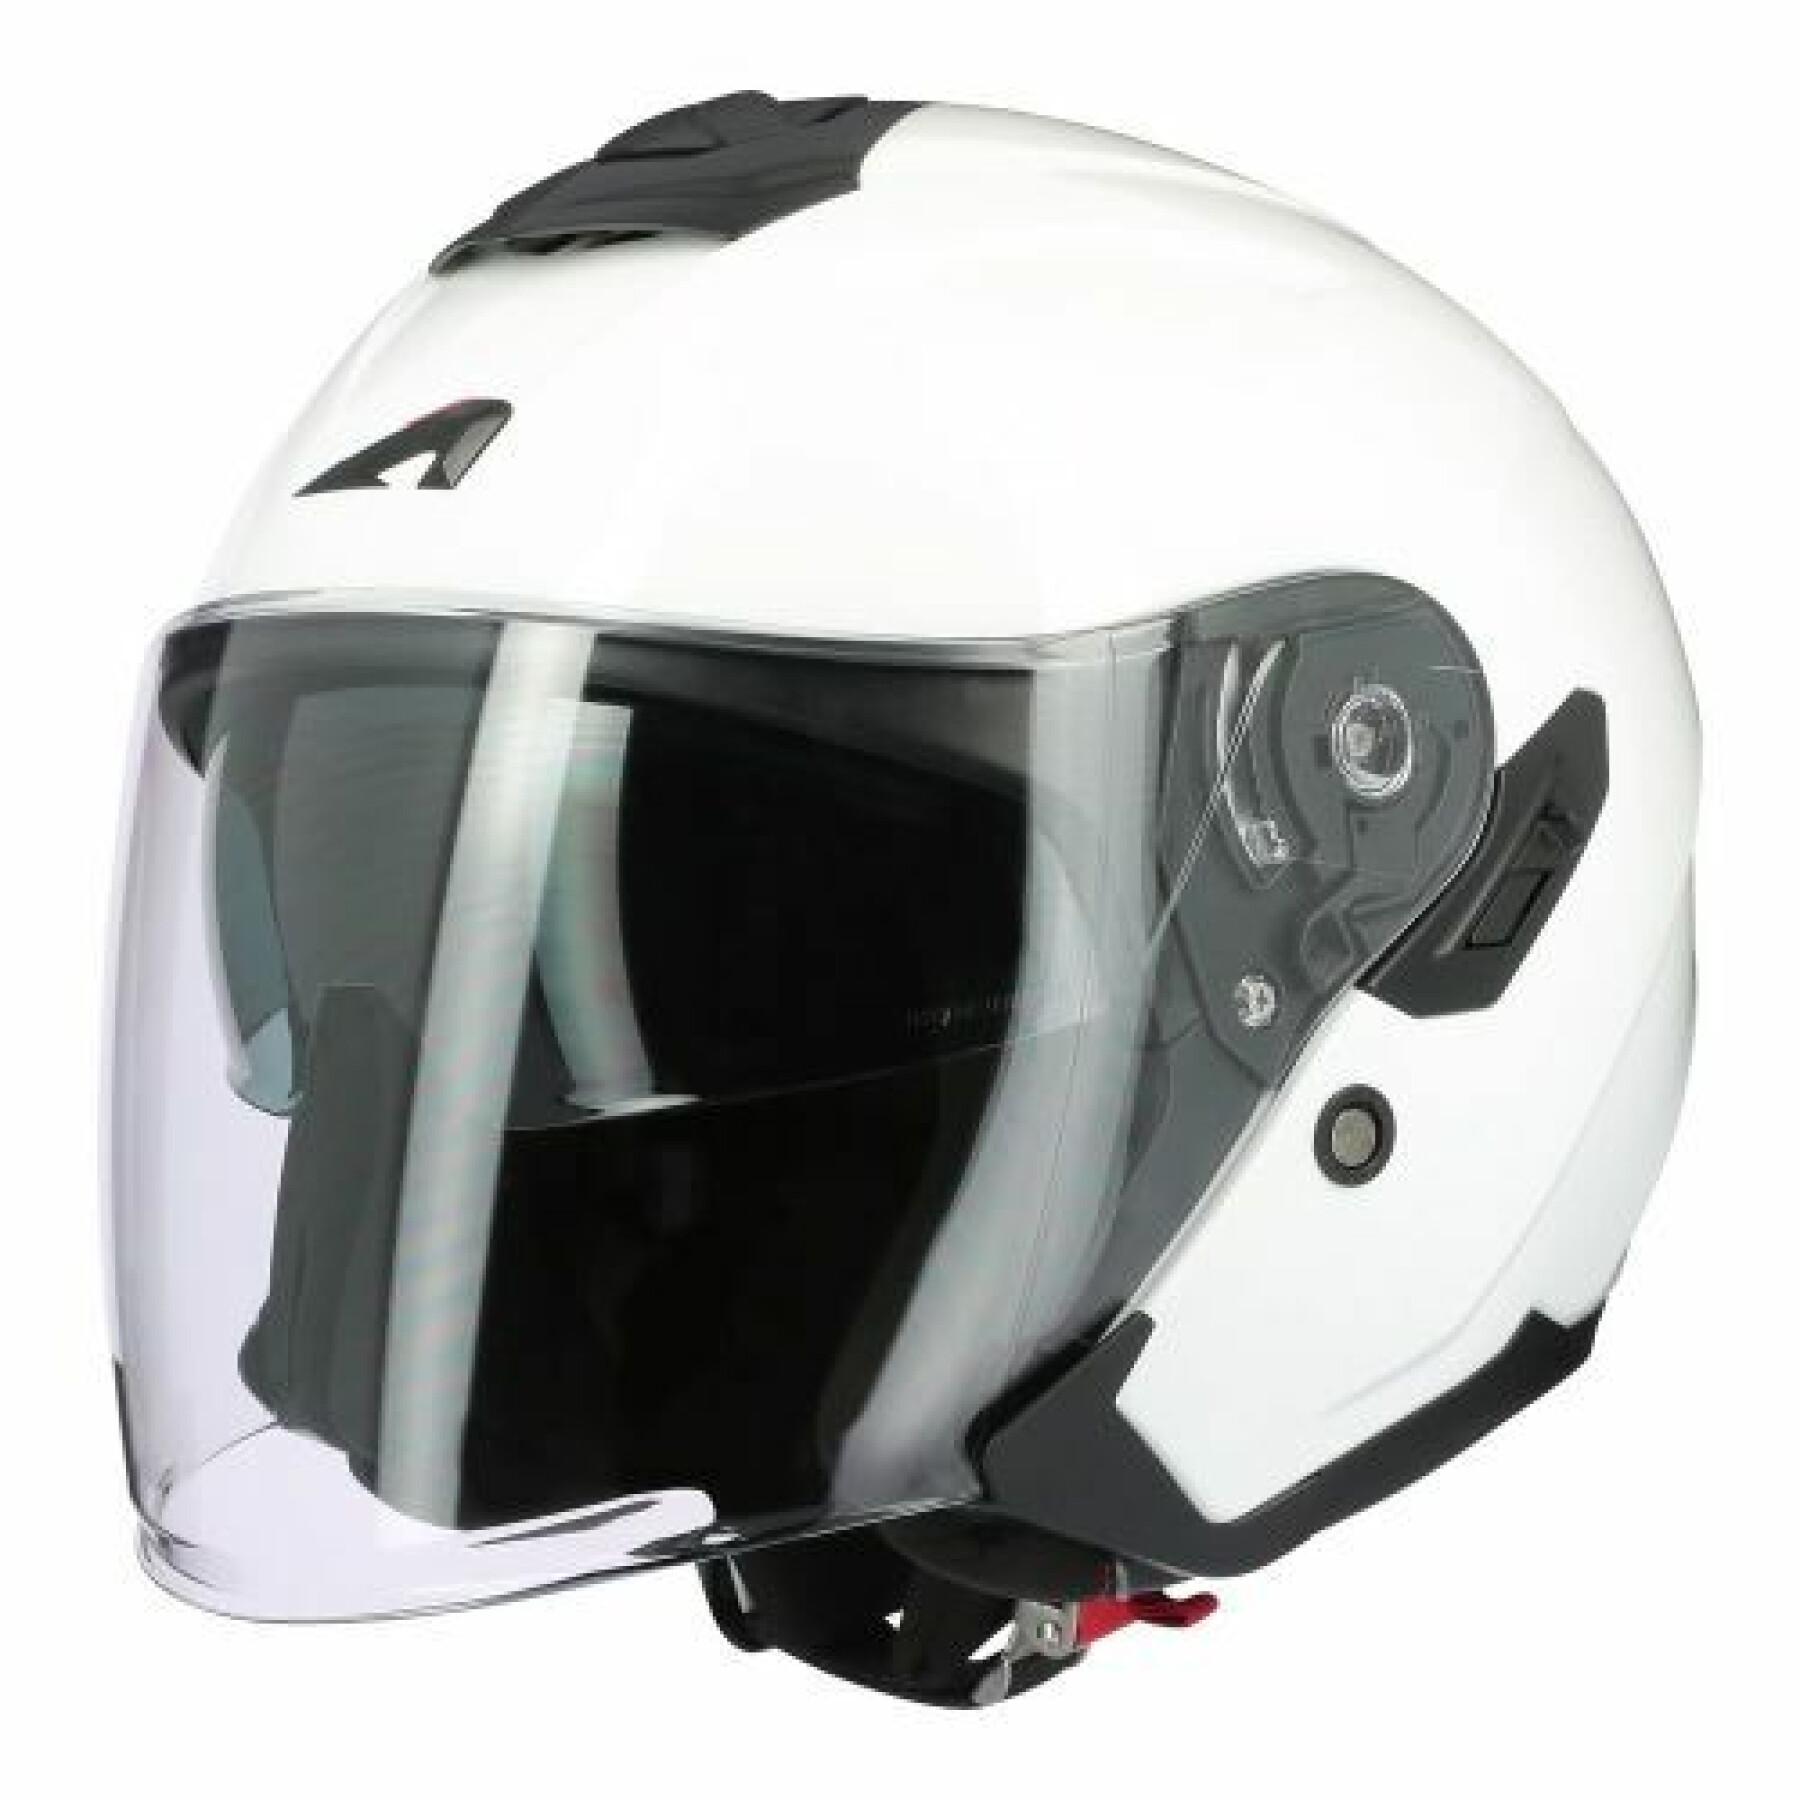 Ventilazione anteriore del casco da moto Astone Cross Tourer